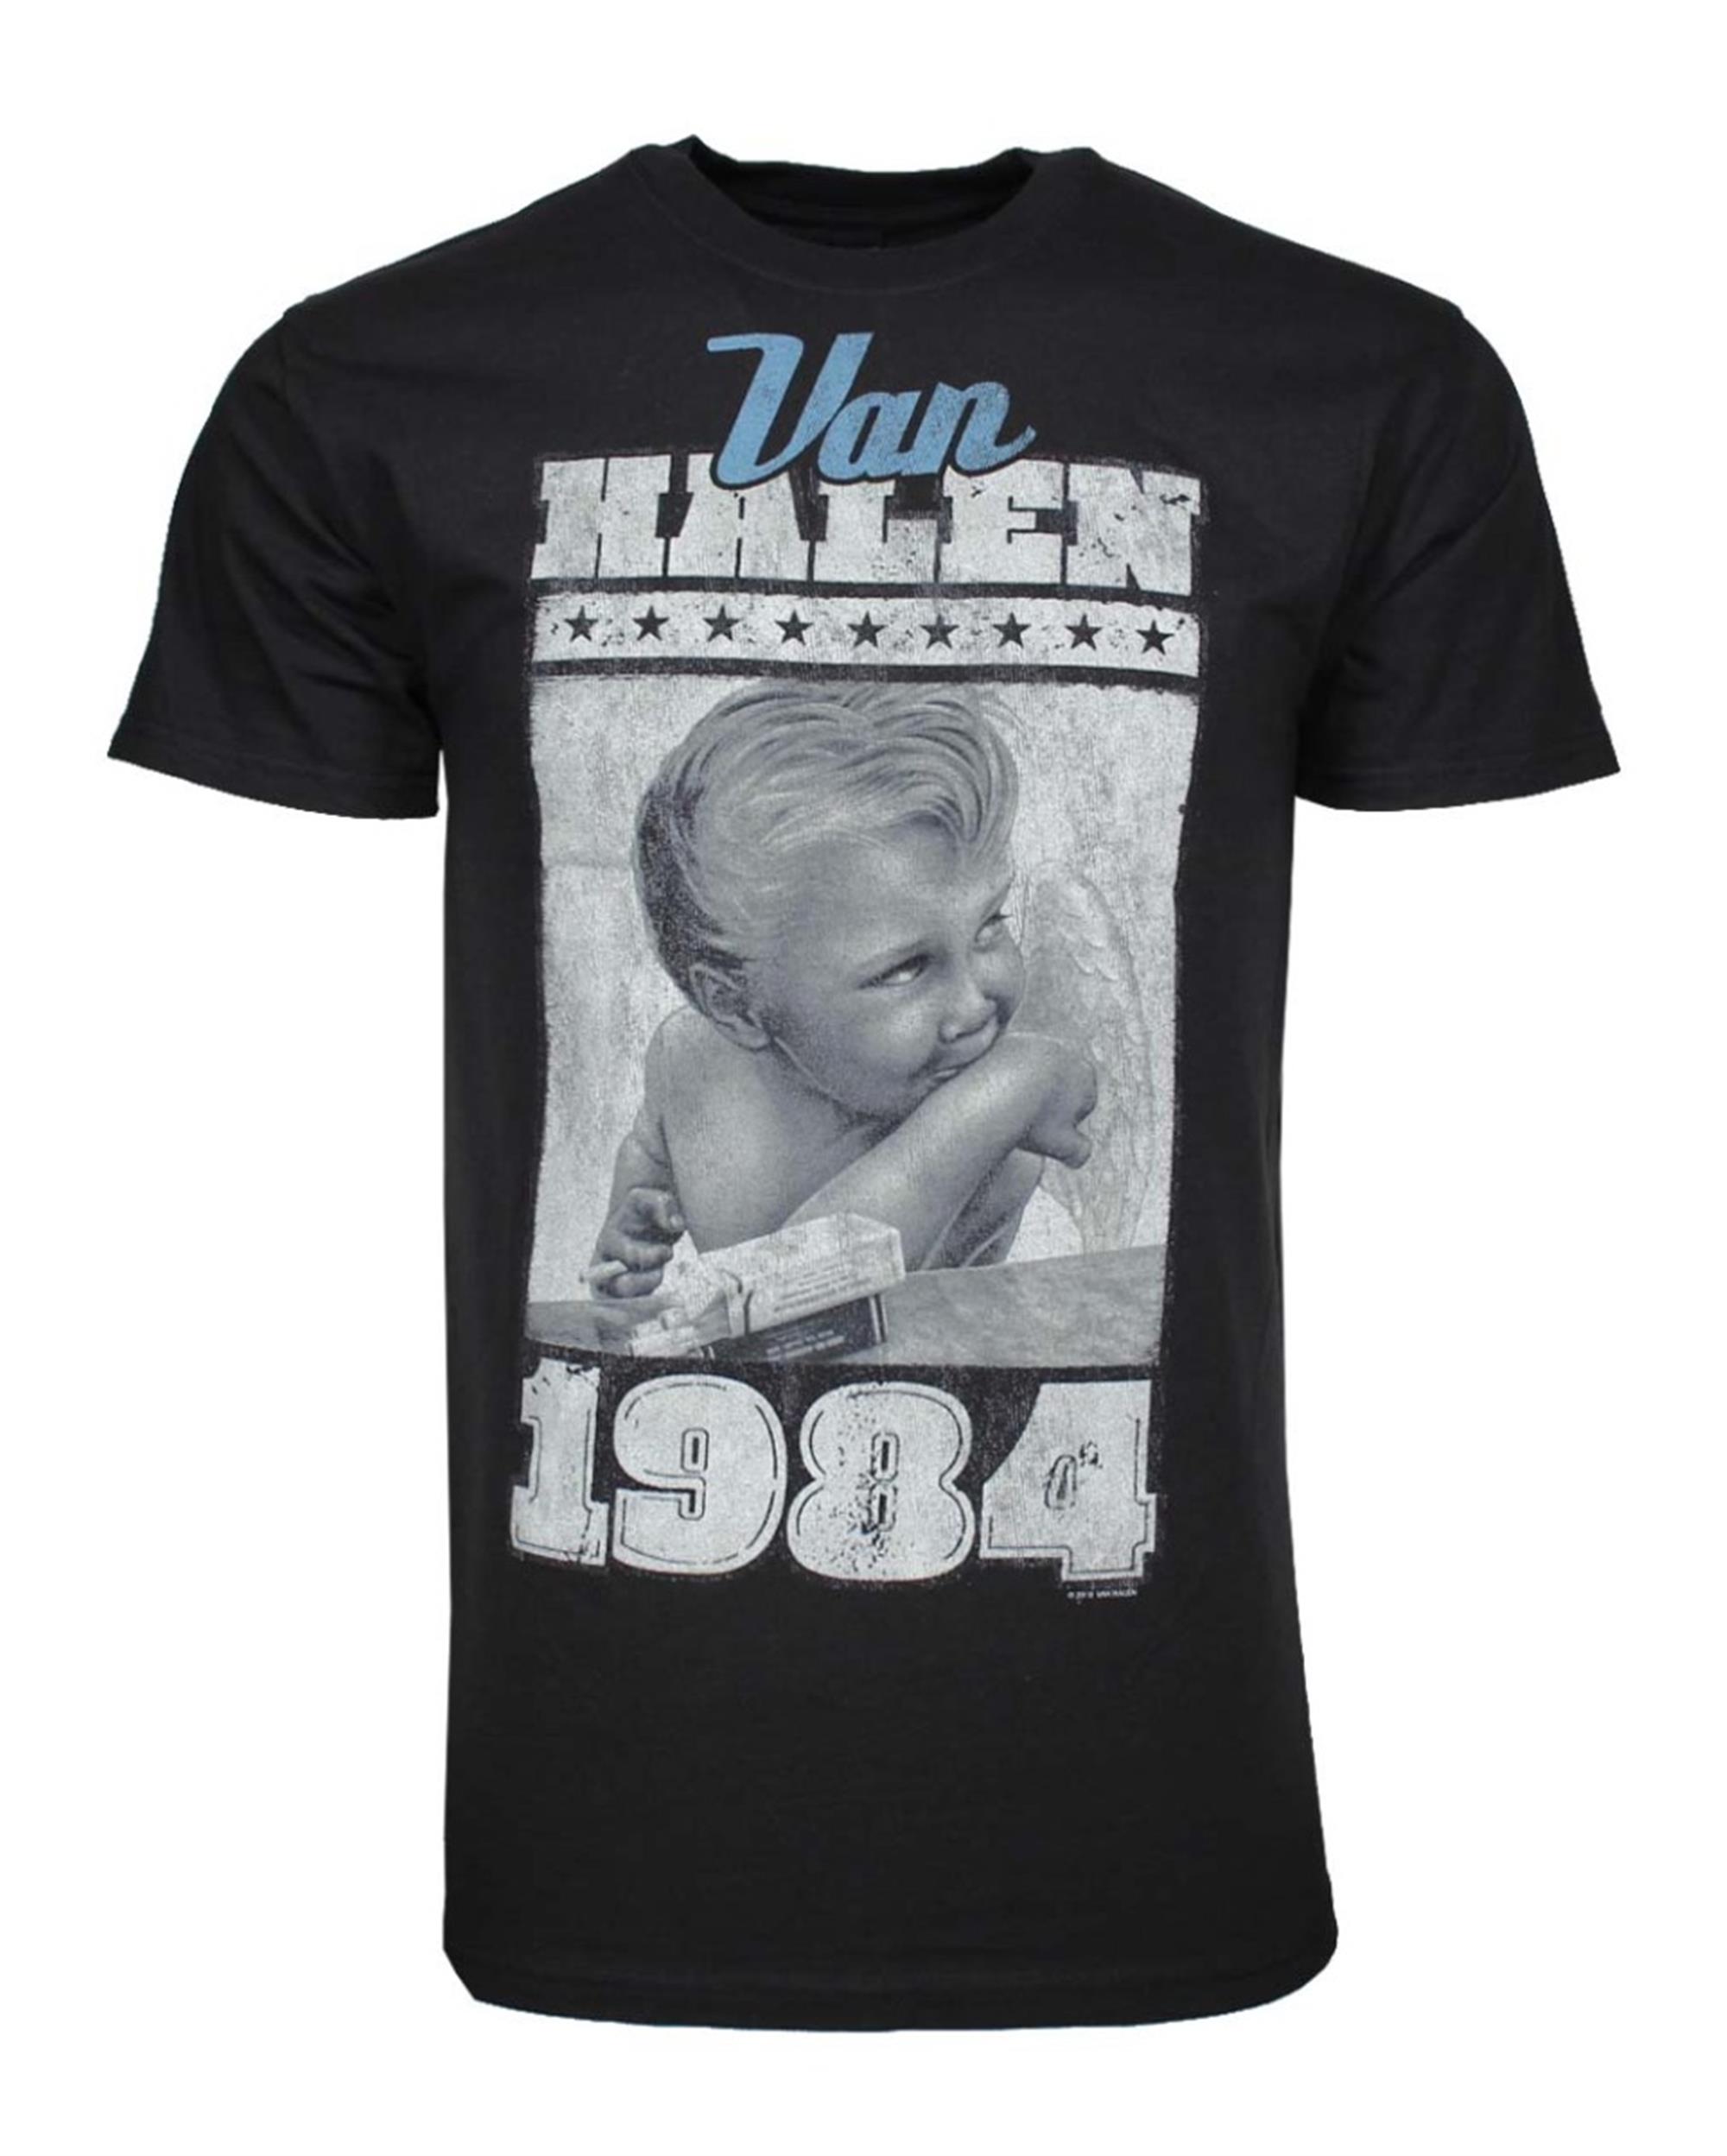 Van Halen 1984 Baby Jumbo Print T-Shirt